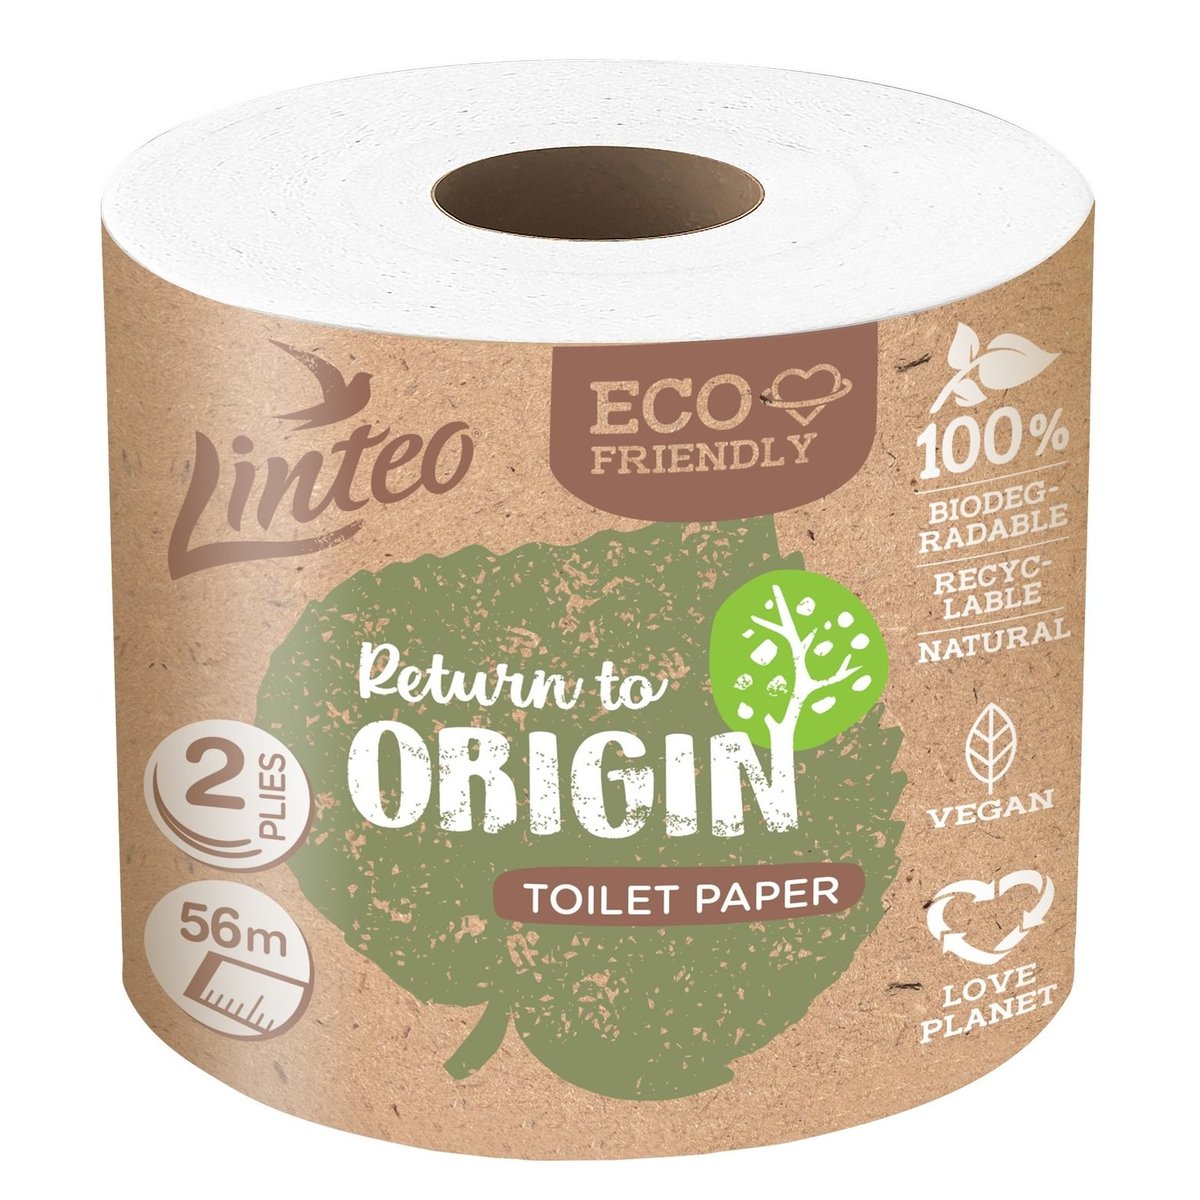 Linteo Economy toaletní papír 2vrstvý, 1 ks